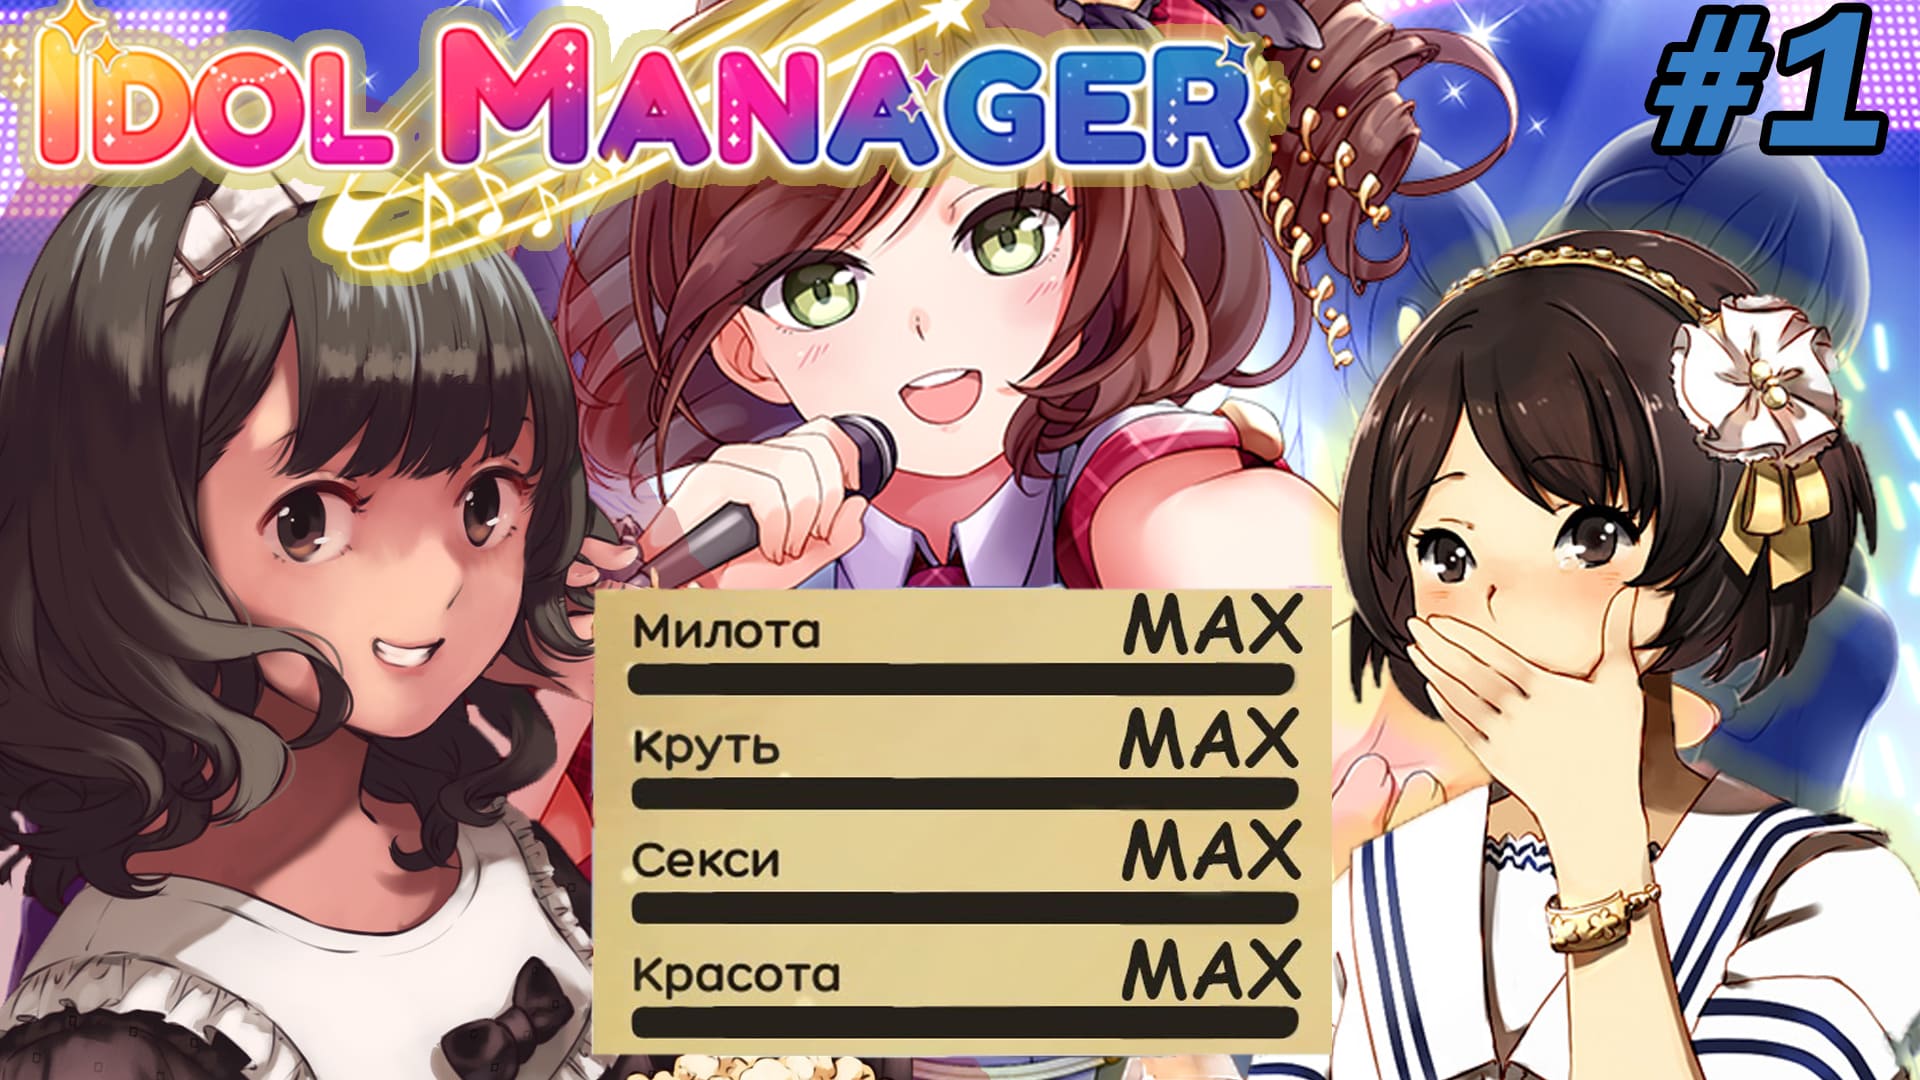 МАМА - Я АЙДОЛ! - Idol Manager #1  Прохождение на русском (ПервыЙ Взгляд)